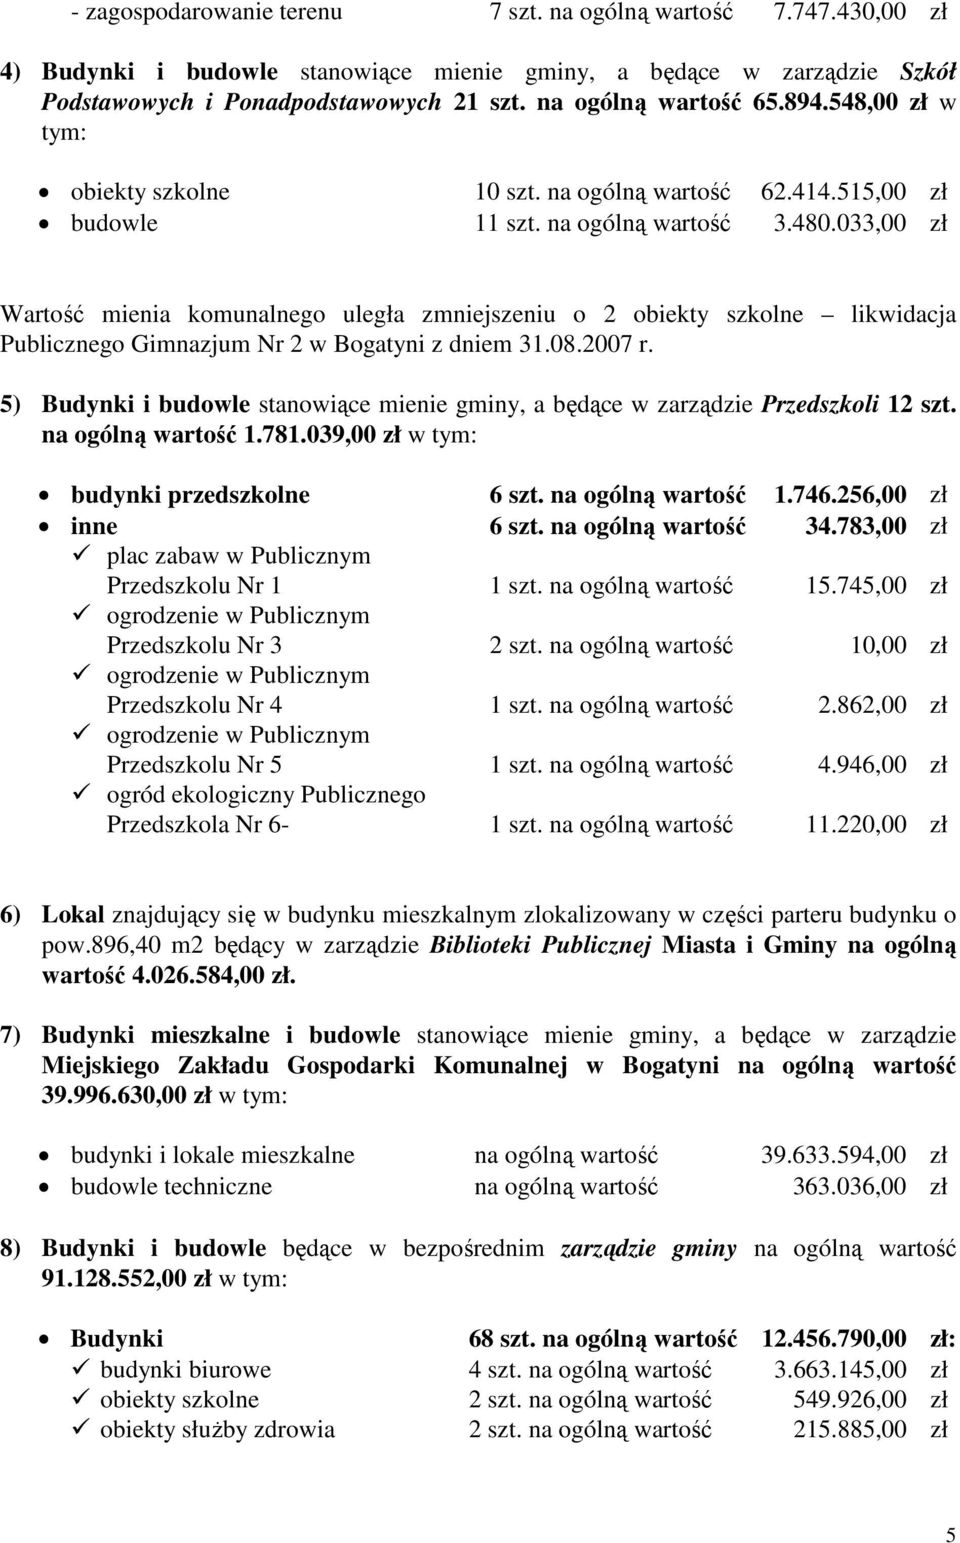 033,00 Wartość mienia komunalnego uległa zmniejszeniu o 2 obiekty szkolne likwidacja Publicznego Gimnazjum Nr 2 w Bogatyni z dniem 31.08.2007 r.